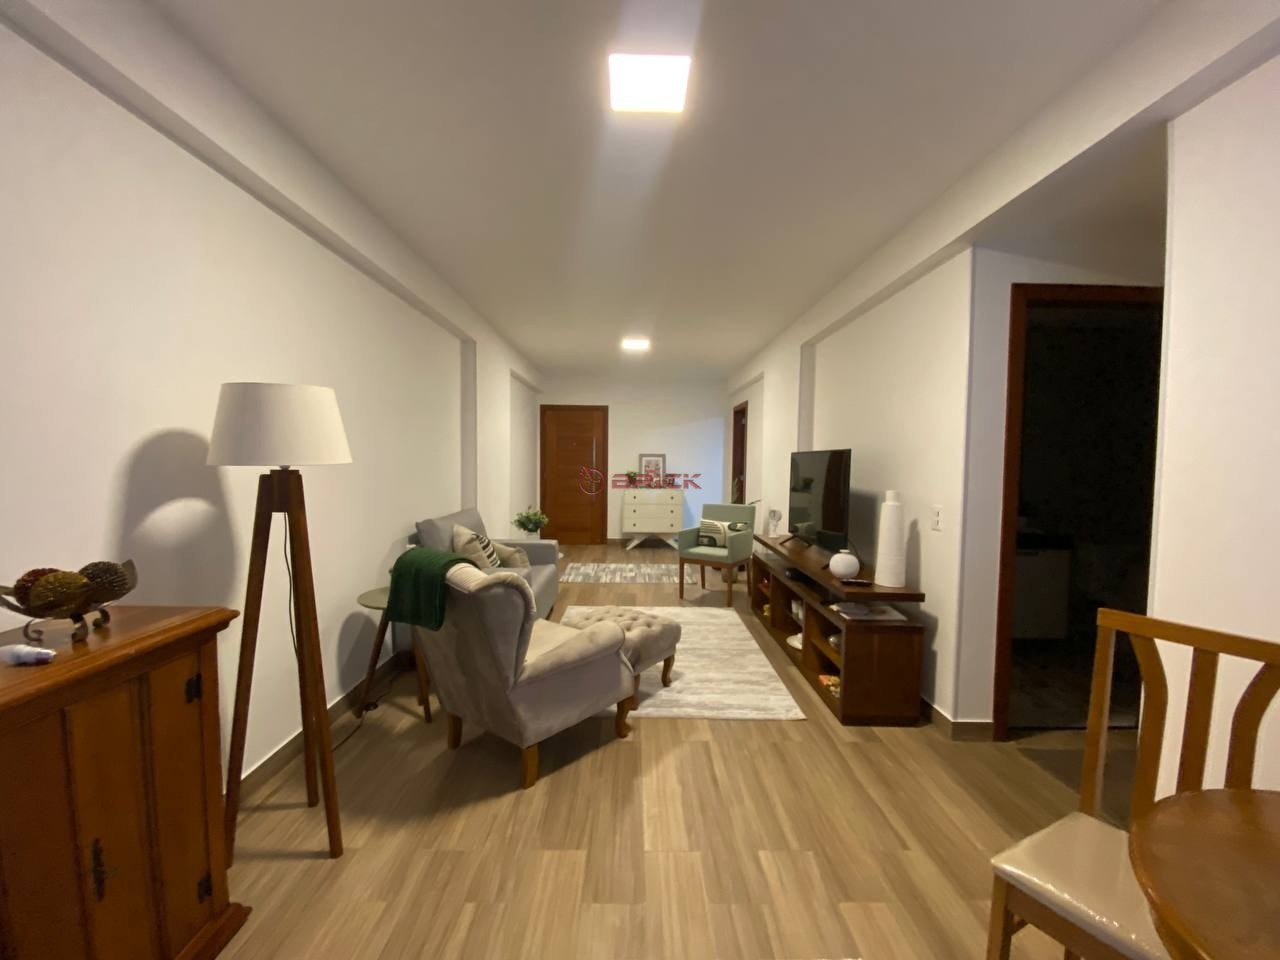 Apartamento à venda em Alto, Teresópolis - RJ - Foto 1